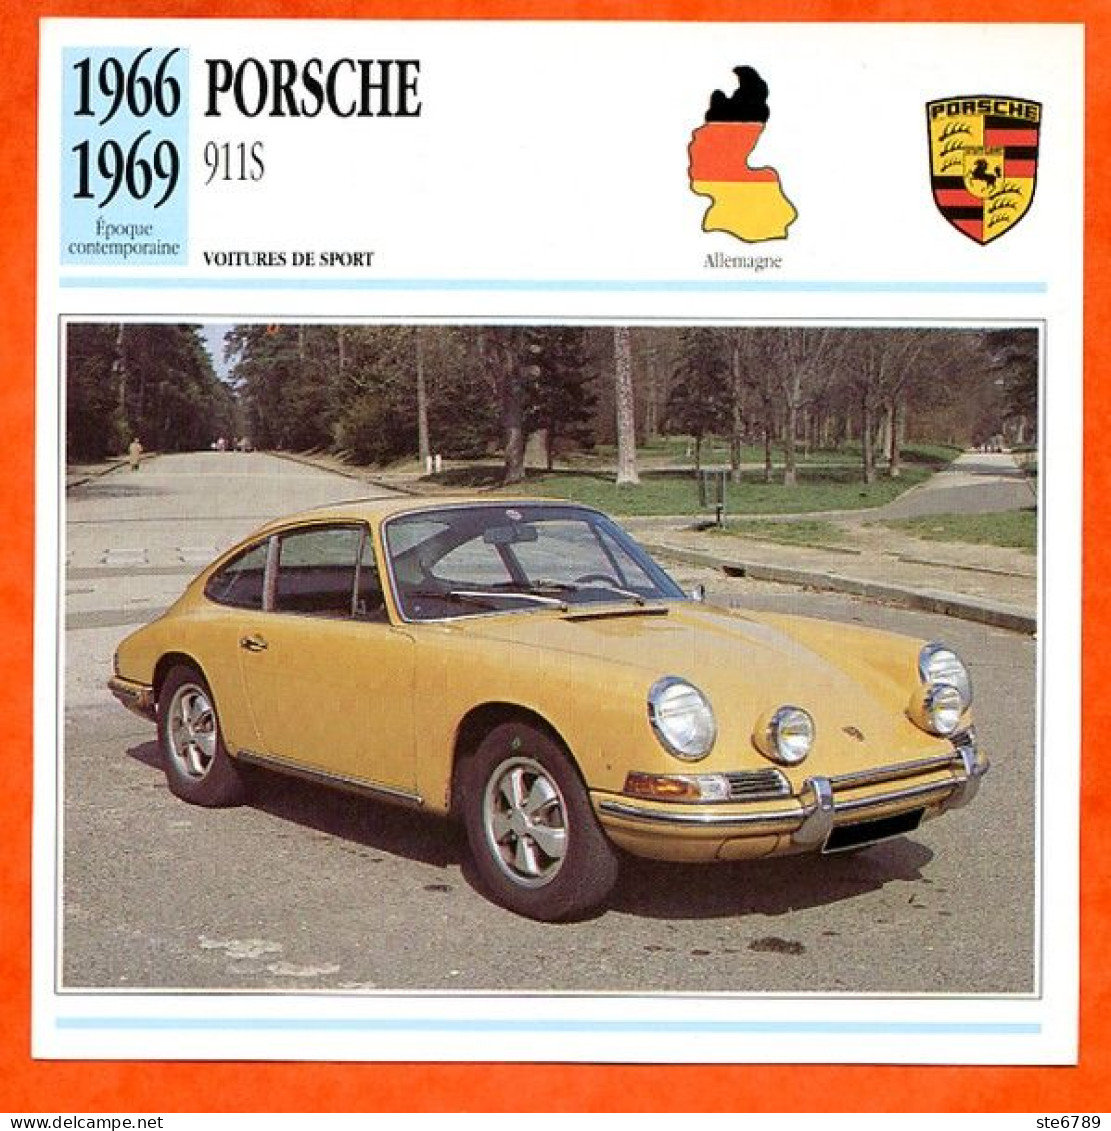 PORSCHE 911 S 1966 Voiture De Sport Allemagne Fiche Technique Automobile - Autos